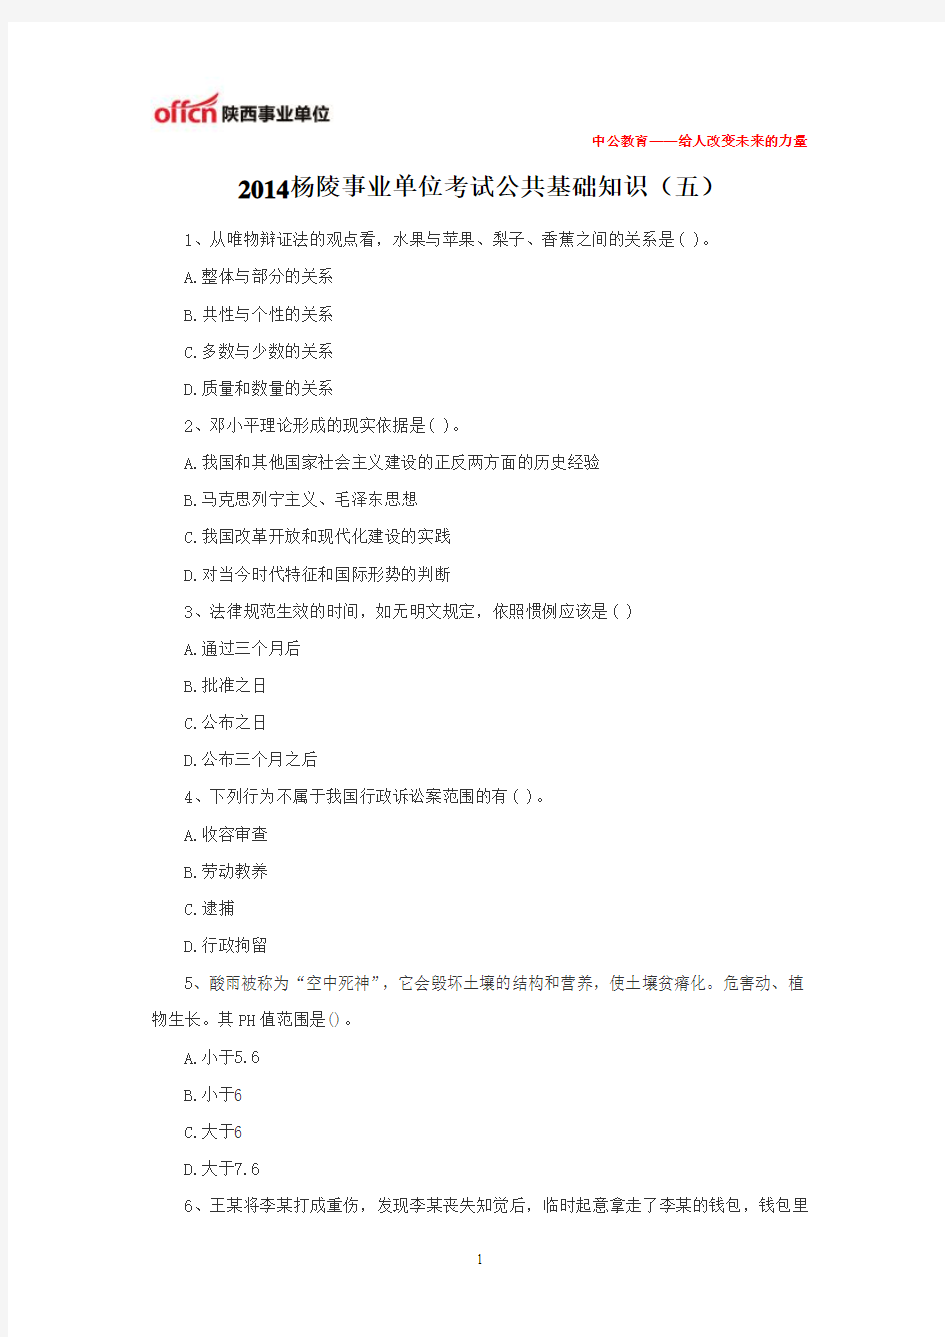 2014杨陵事业单位考试公共基础知识(五)